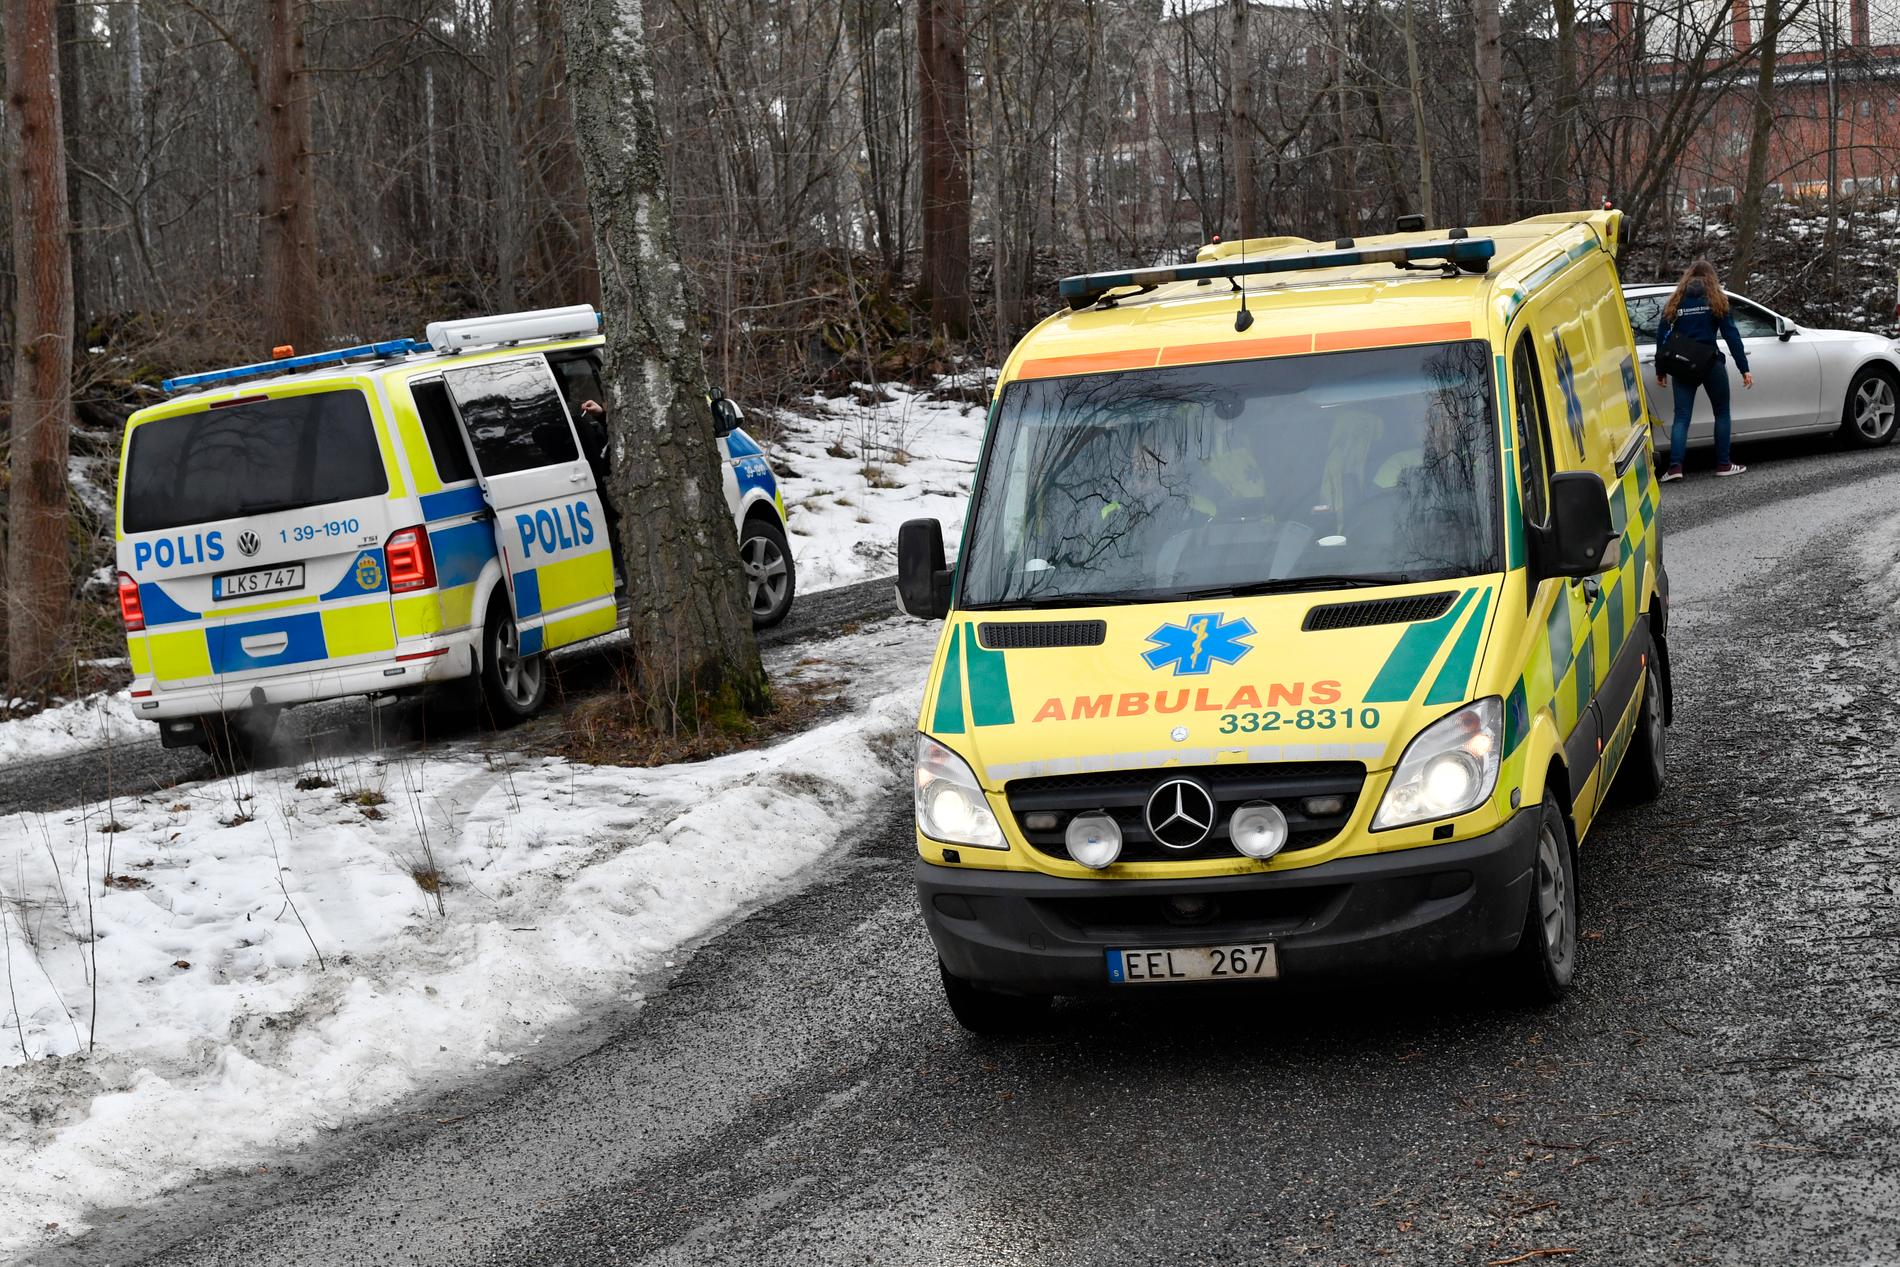 Polis, ambulans och räddningstjänst kallades till en skola på Lidingö efter att flera elever plötsligt insjuknat. Arkivbild.